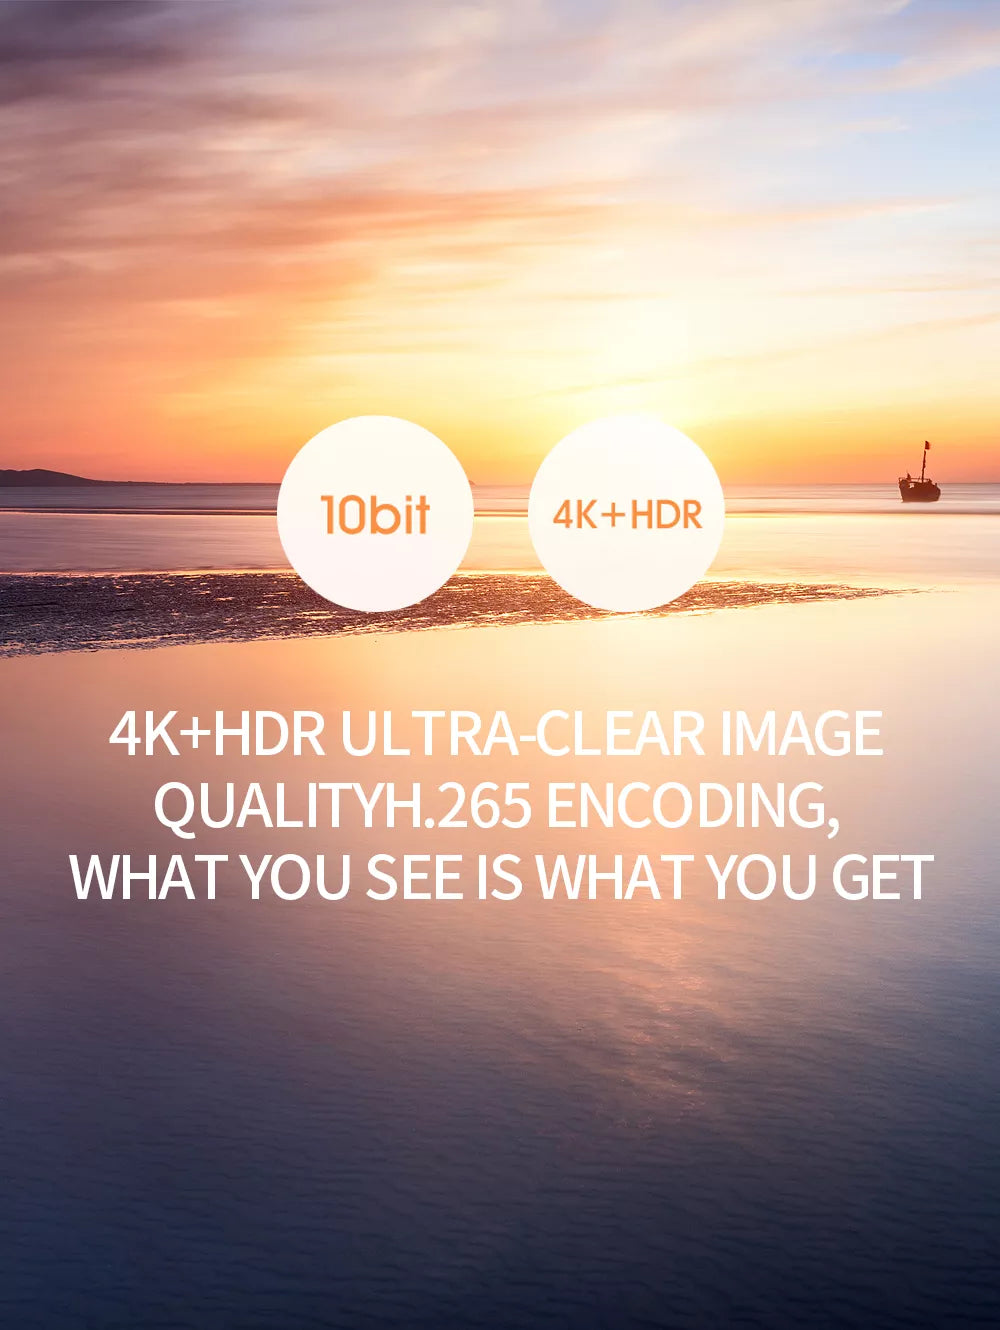 SJRC F11S 4K HD PRO Drone, IObit 4K+HDR ULTRA-CLEAR IMAGE QUAL